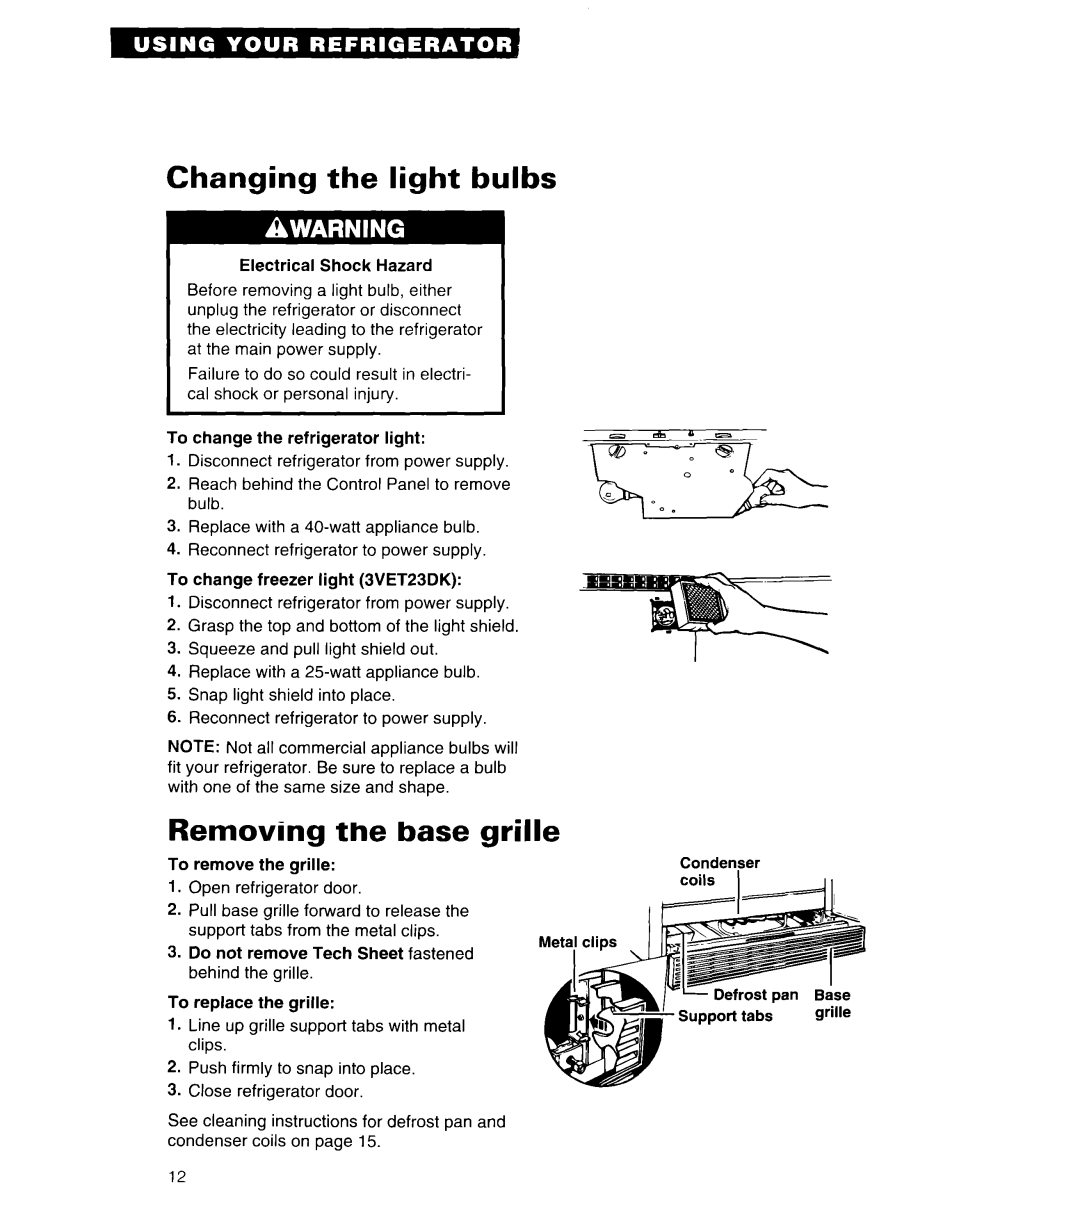 Whirlpool 3VET21DK, 3VET23DK, 3VETlSDK important safety instructions Changing the light bulbs, Removing the base grille 